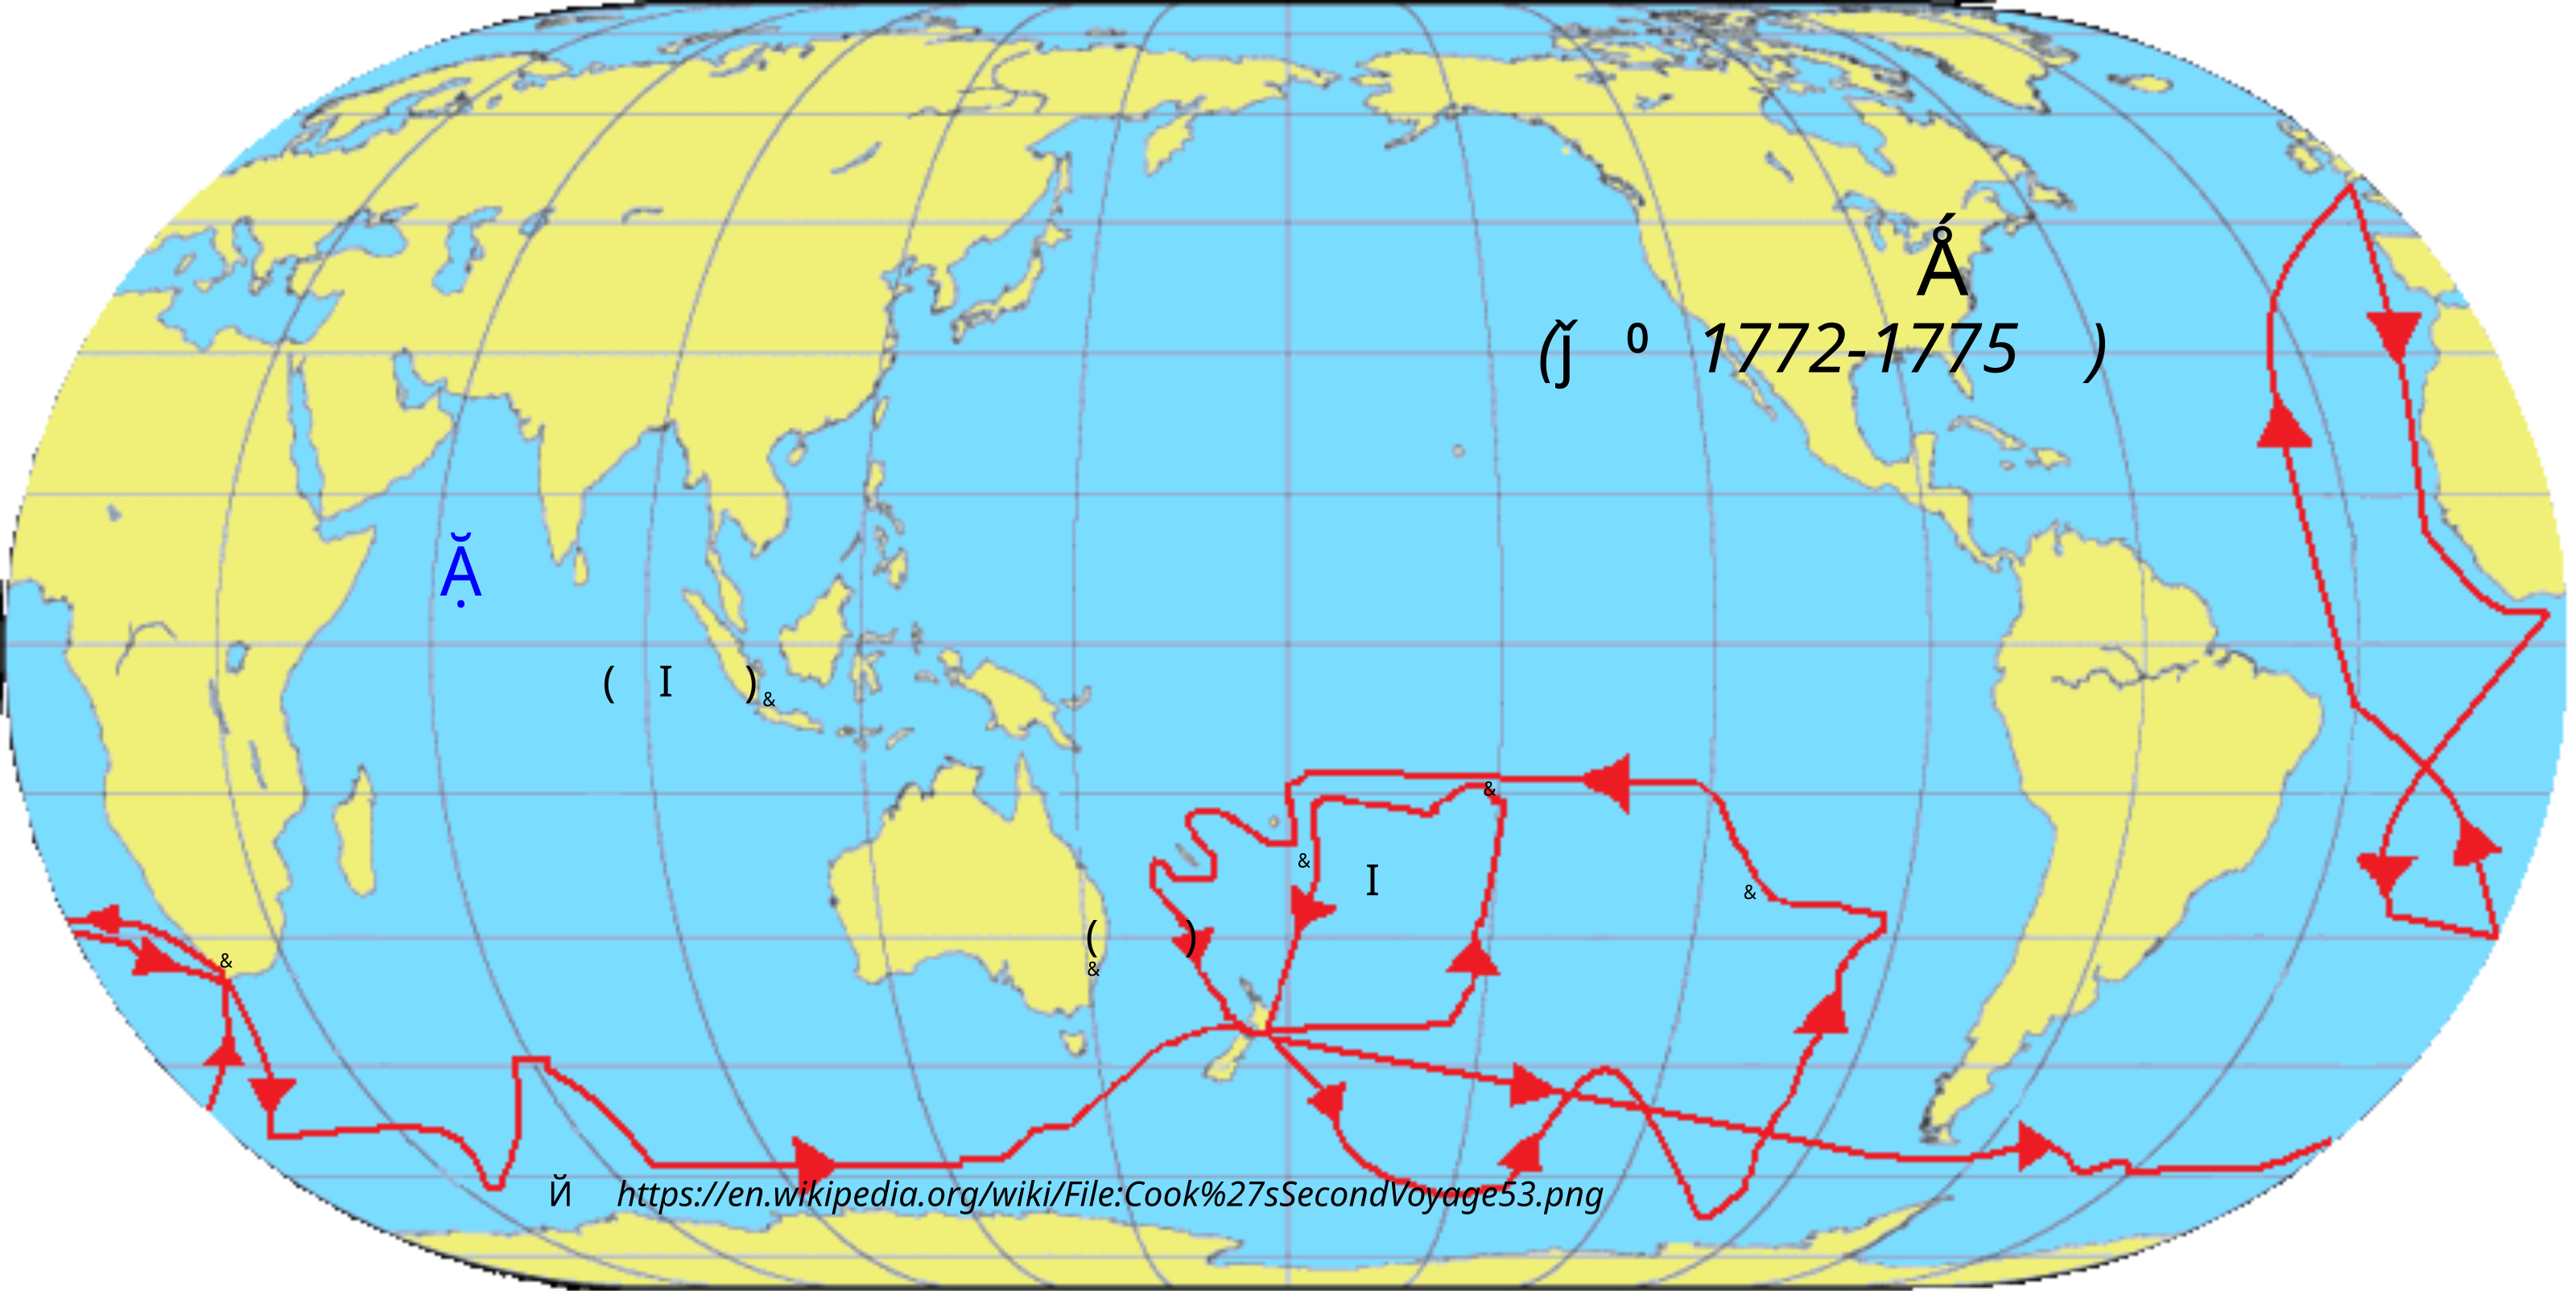 地图 42 库克船长的第二次远航